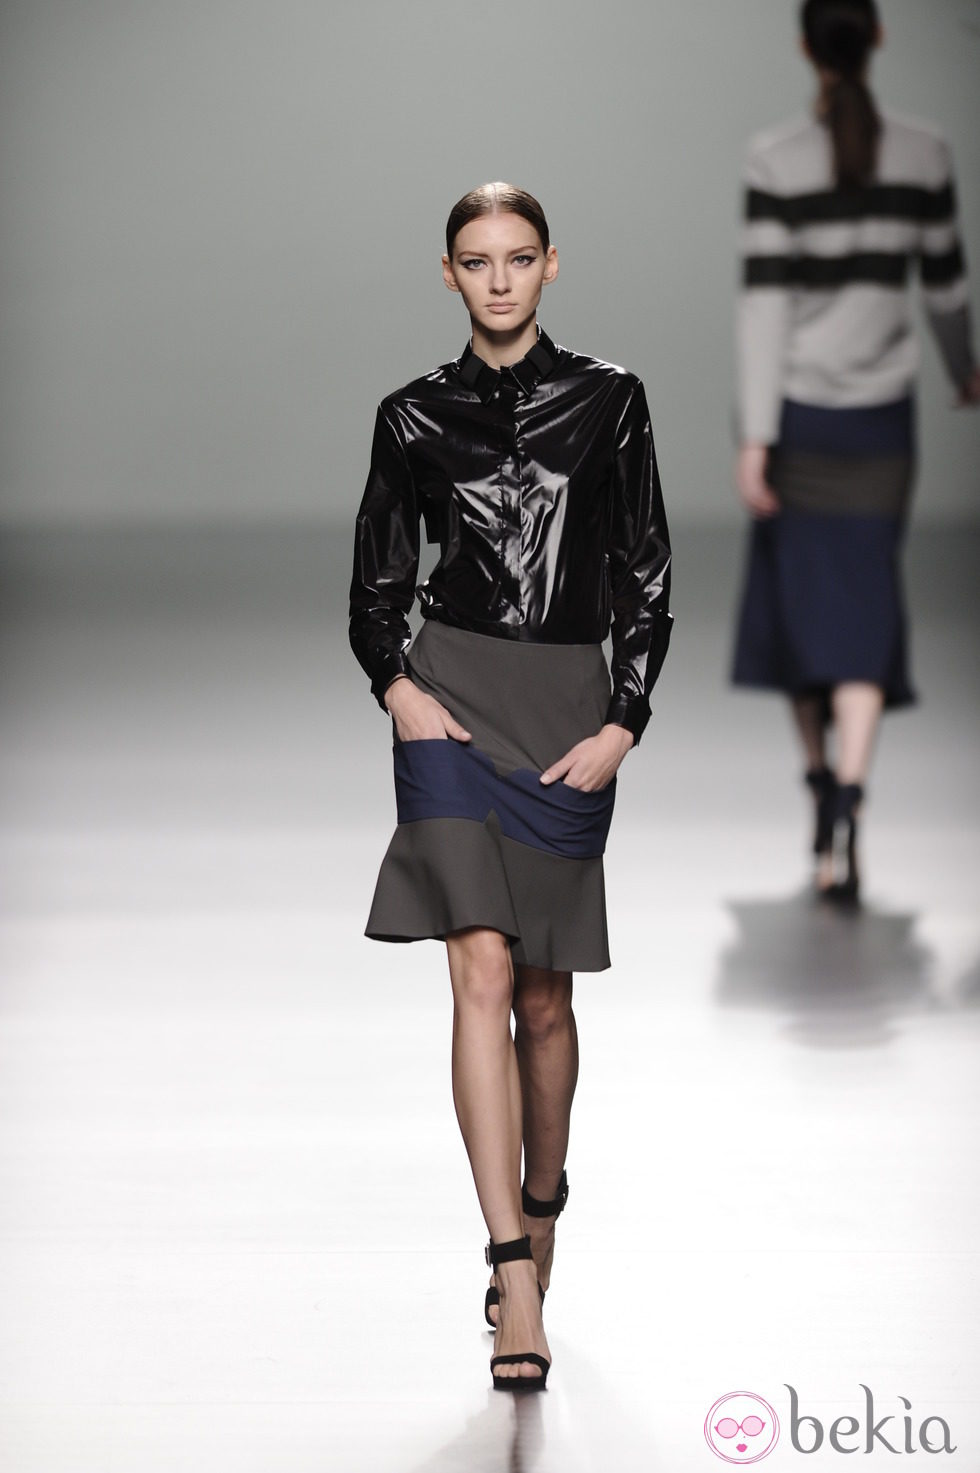 Camisa negra impermeable de la colección otoño/invierno 2013/2014 de Rabaneda en Madrid Fashion Week